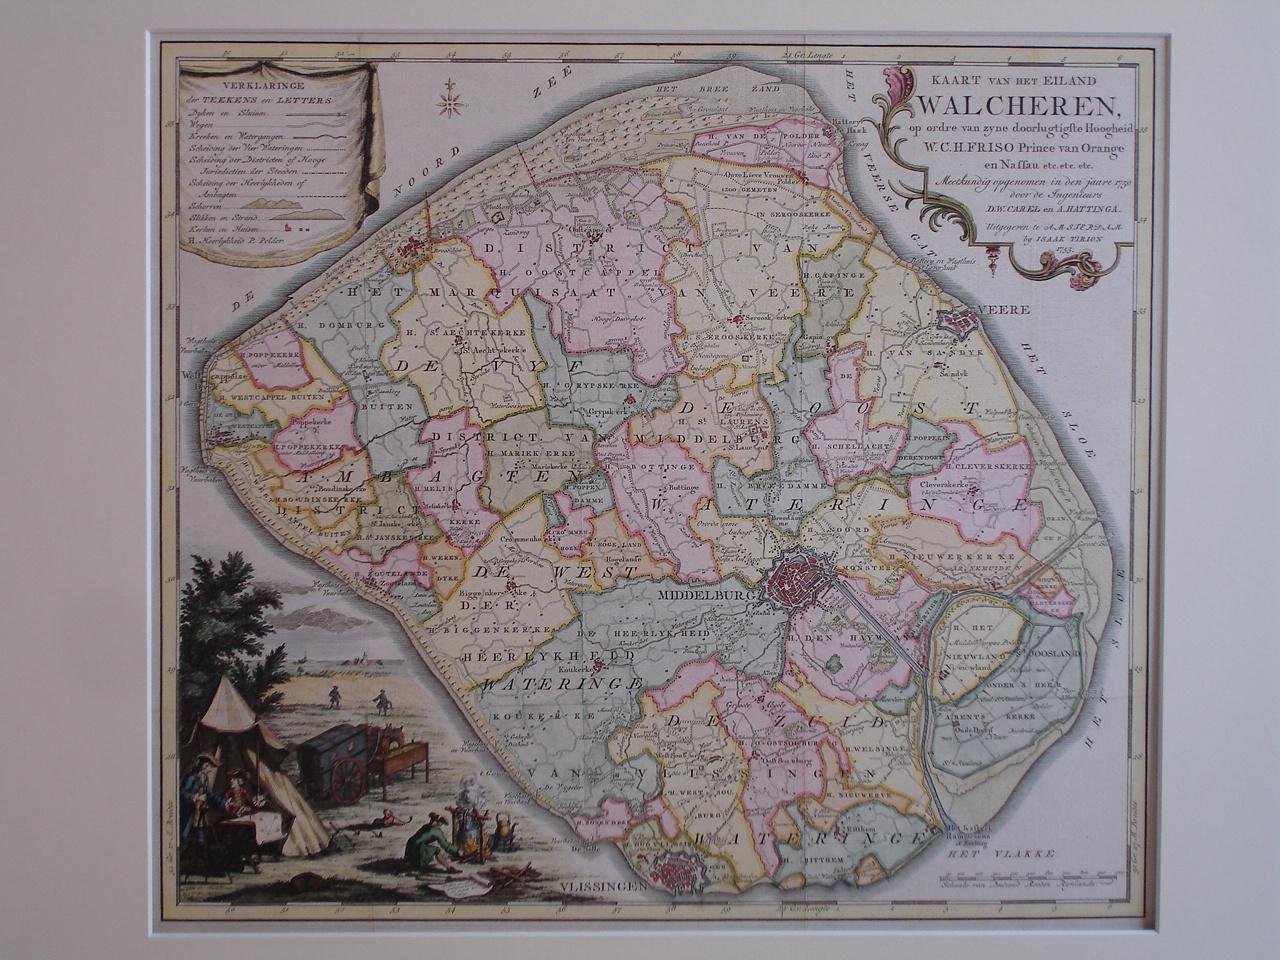 Walcheren. - Kaart van het eiland Walcheren, op ordre van zyne doorlugtigste Hoogheid W.C.H. Friso Prince van Orange en Nassau etc.etc.etc. Meetkundig opgenomen in den jaare 1750 door de Ingenieurs D.W. Carel en A. Hattinga.